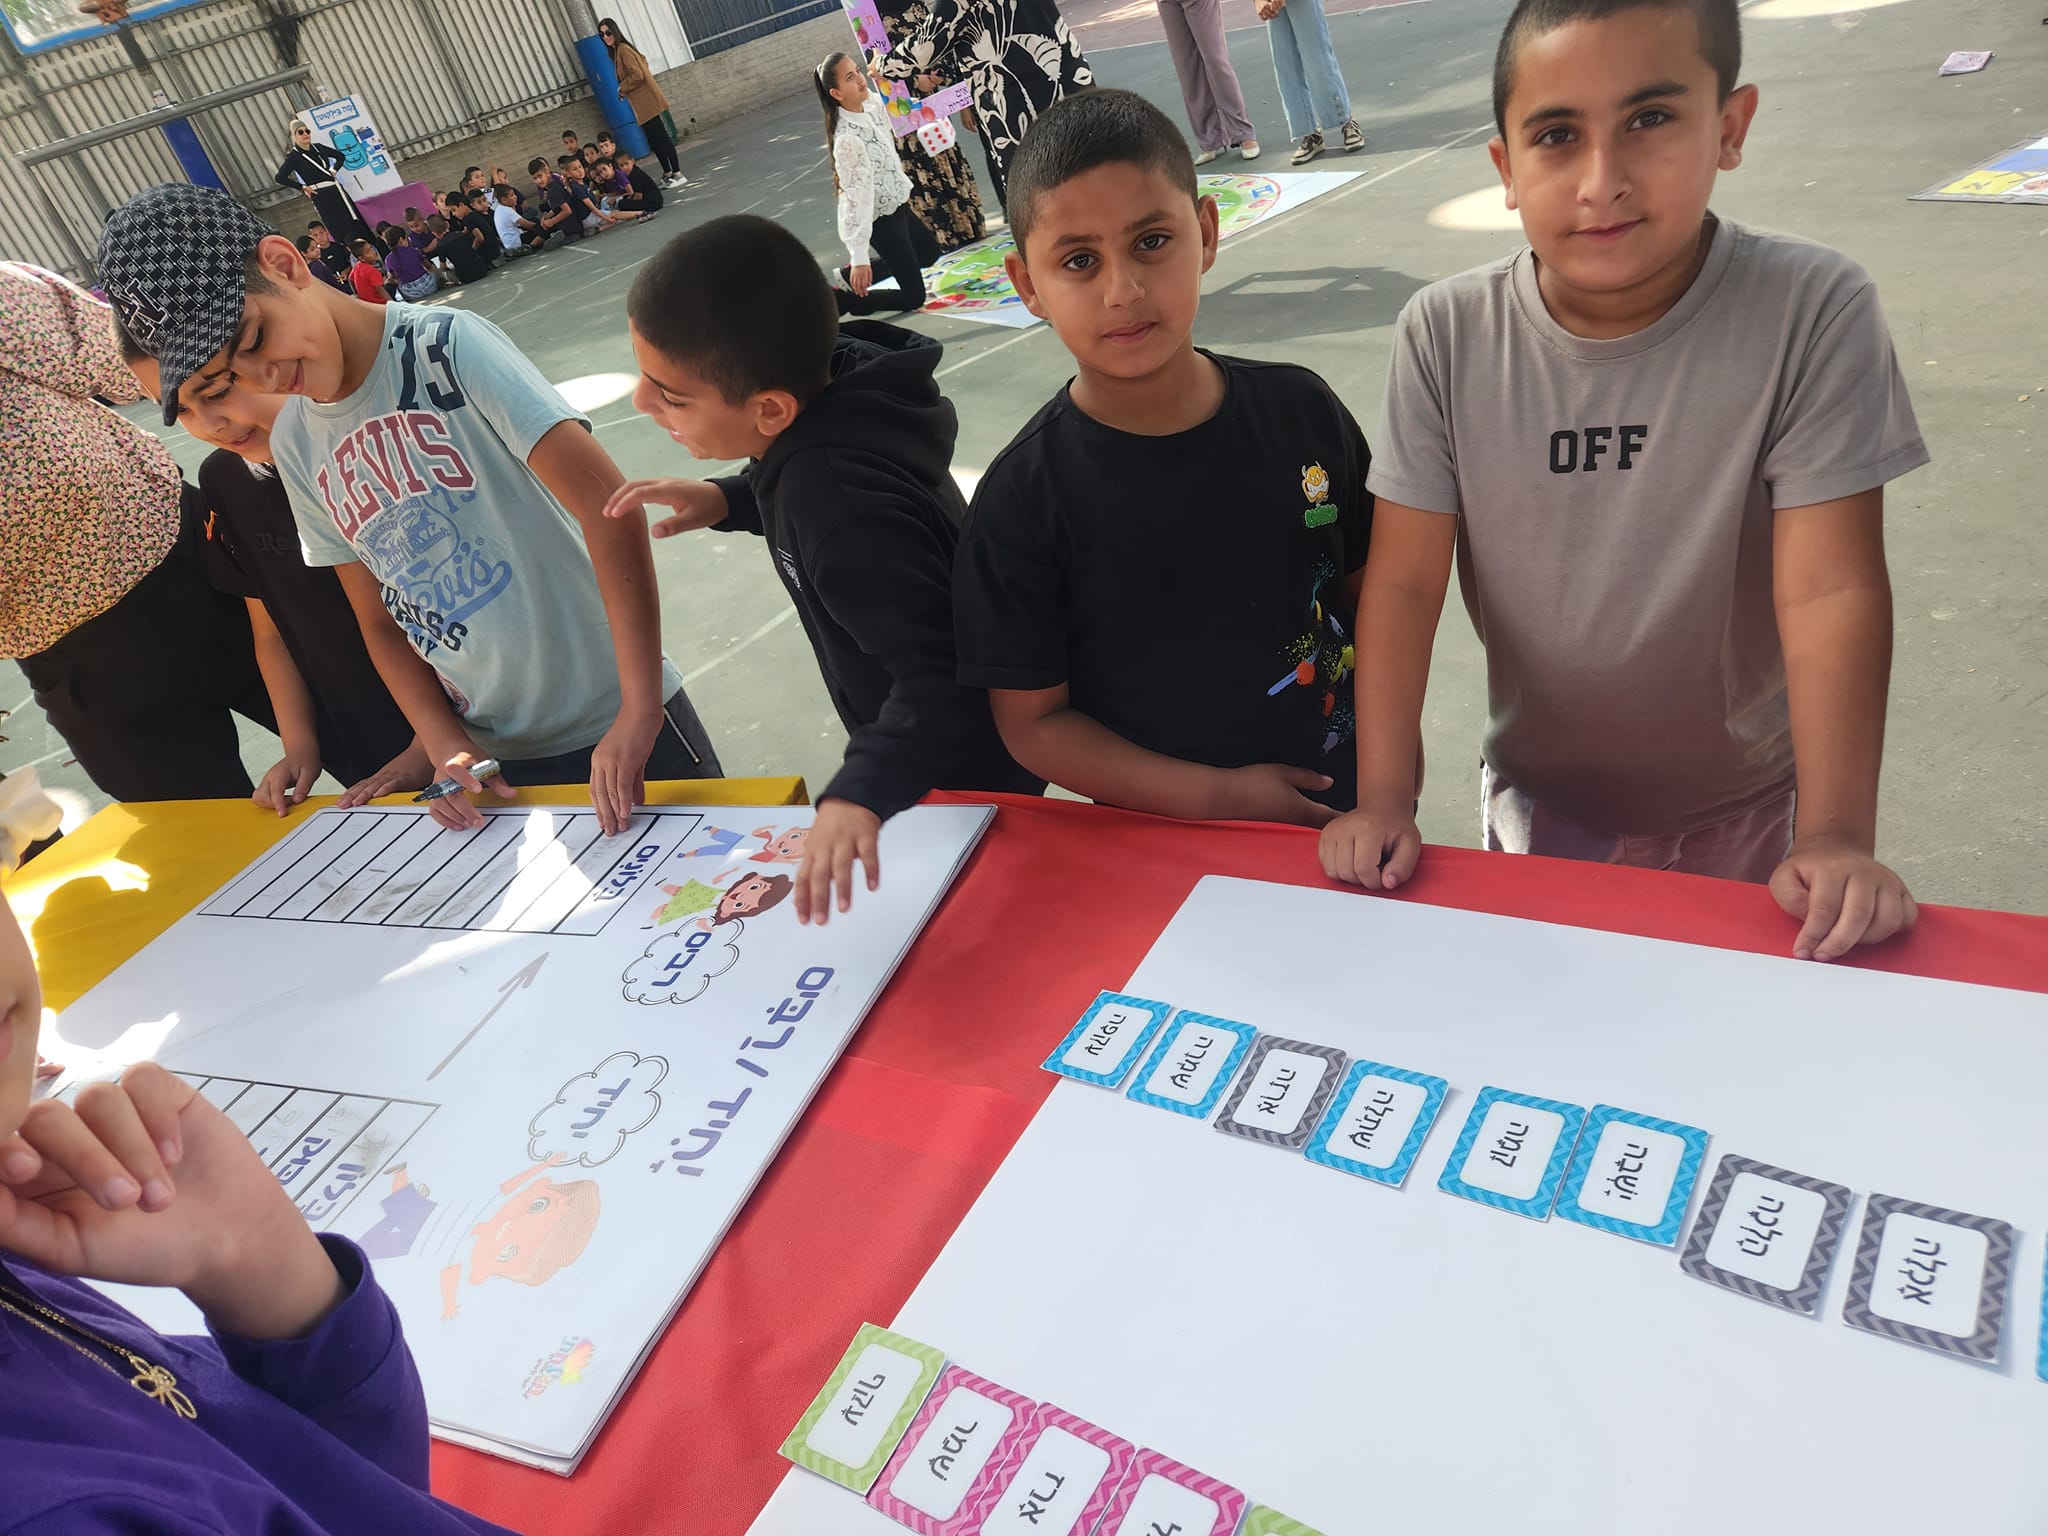  أسبوع اللغة العبرية في المدارس العربية بمدينة اللد 